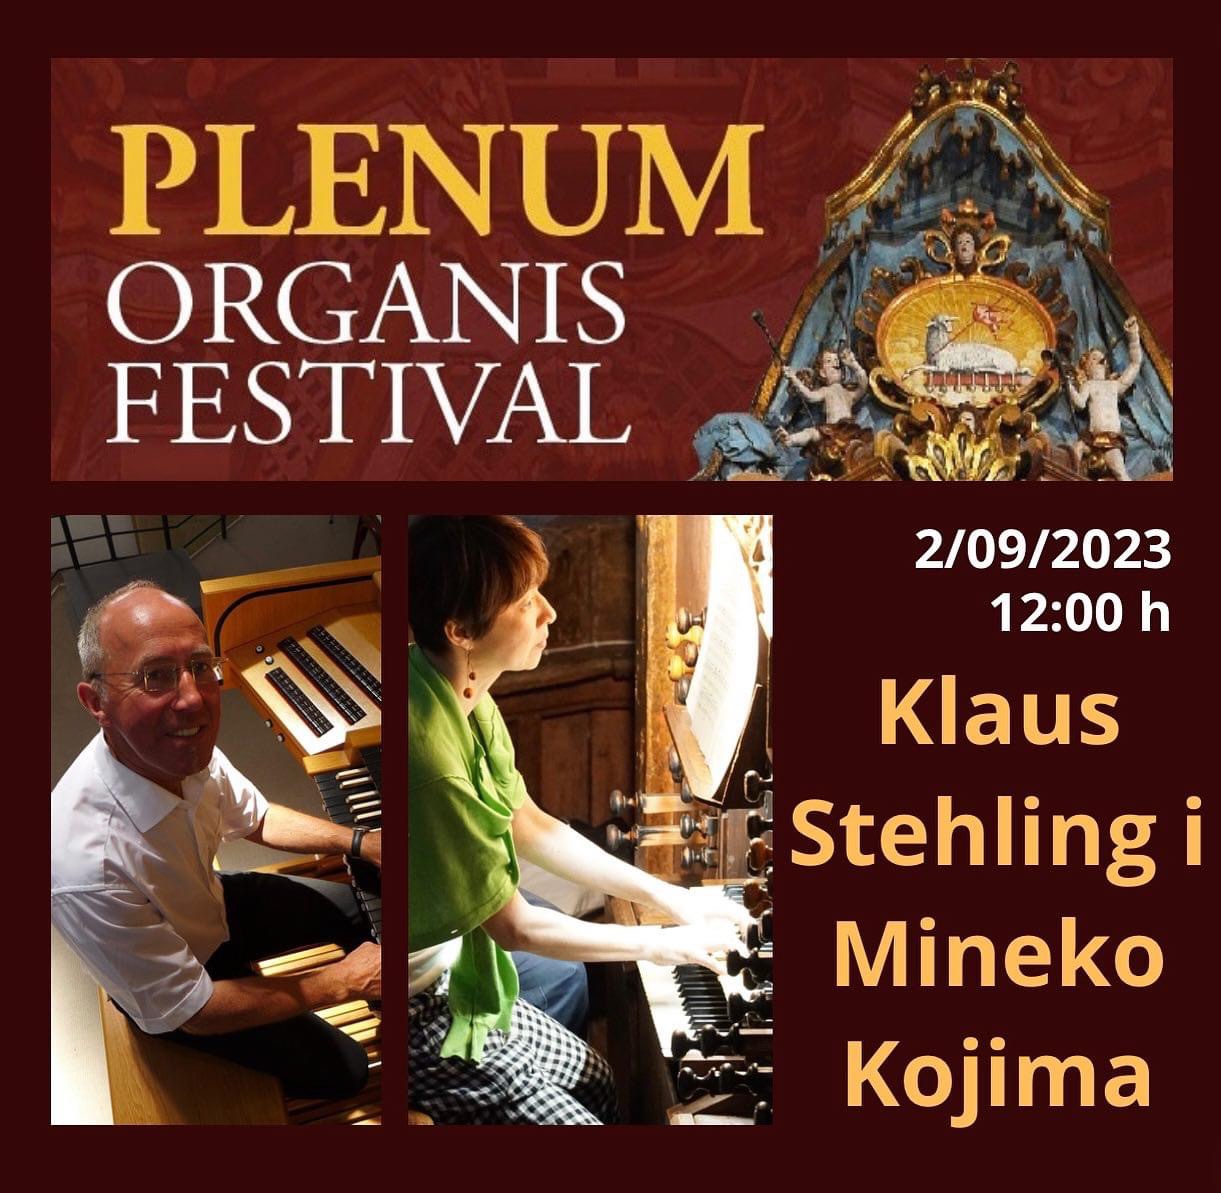 Plenum organis festival